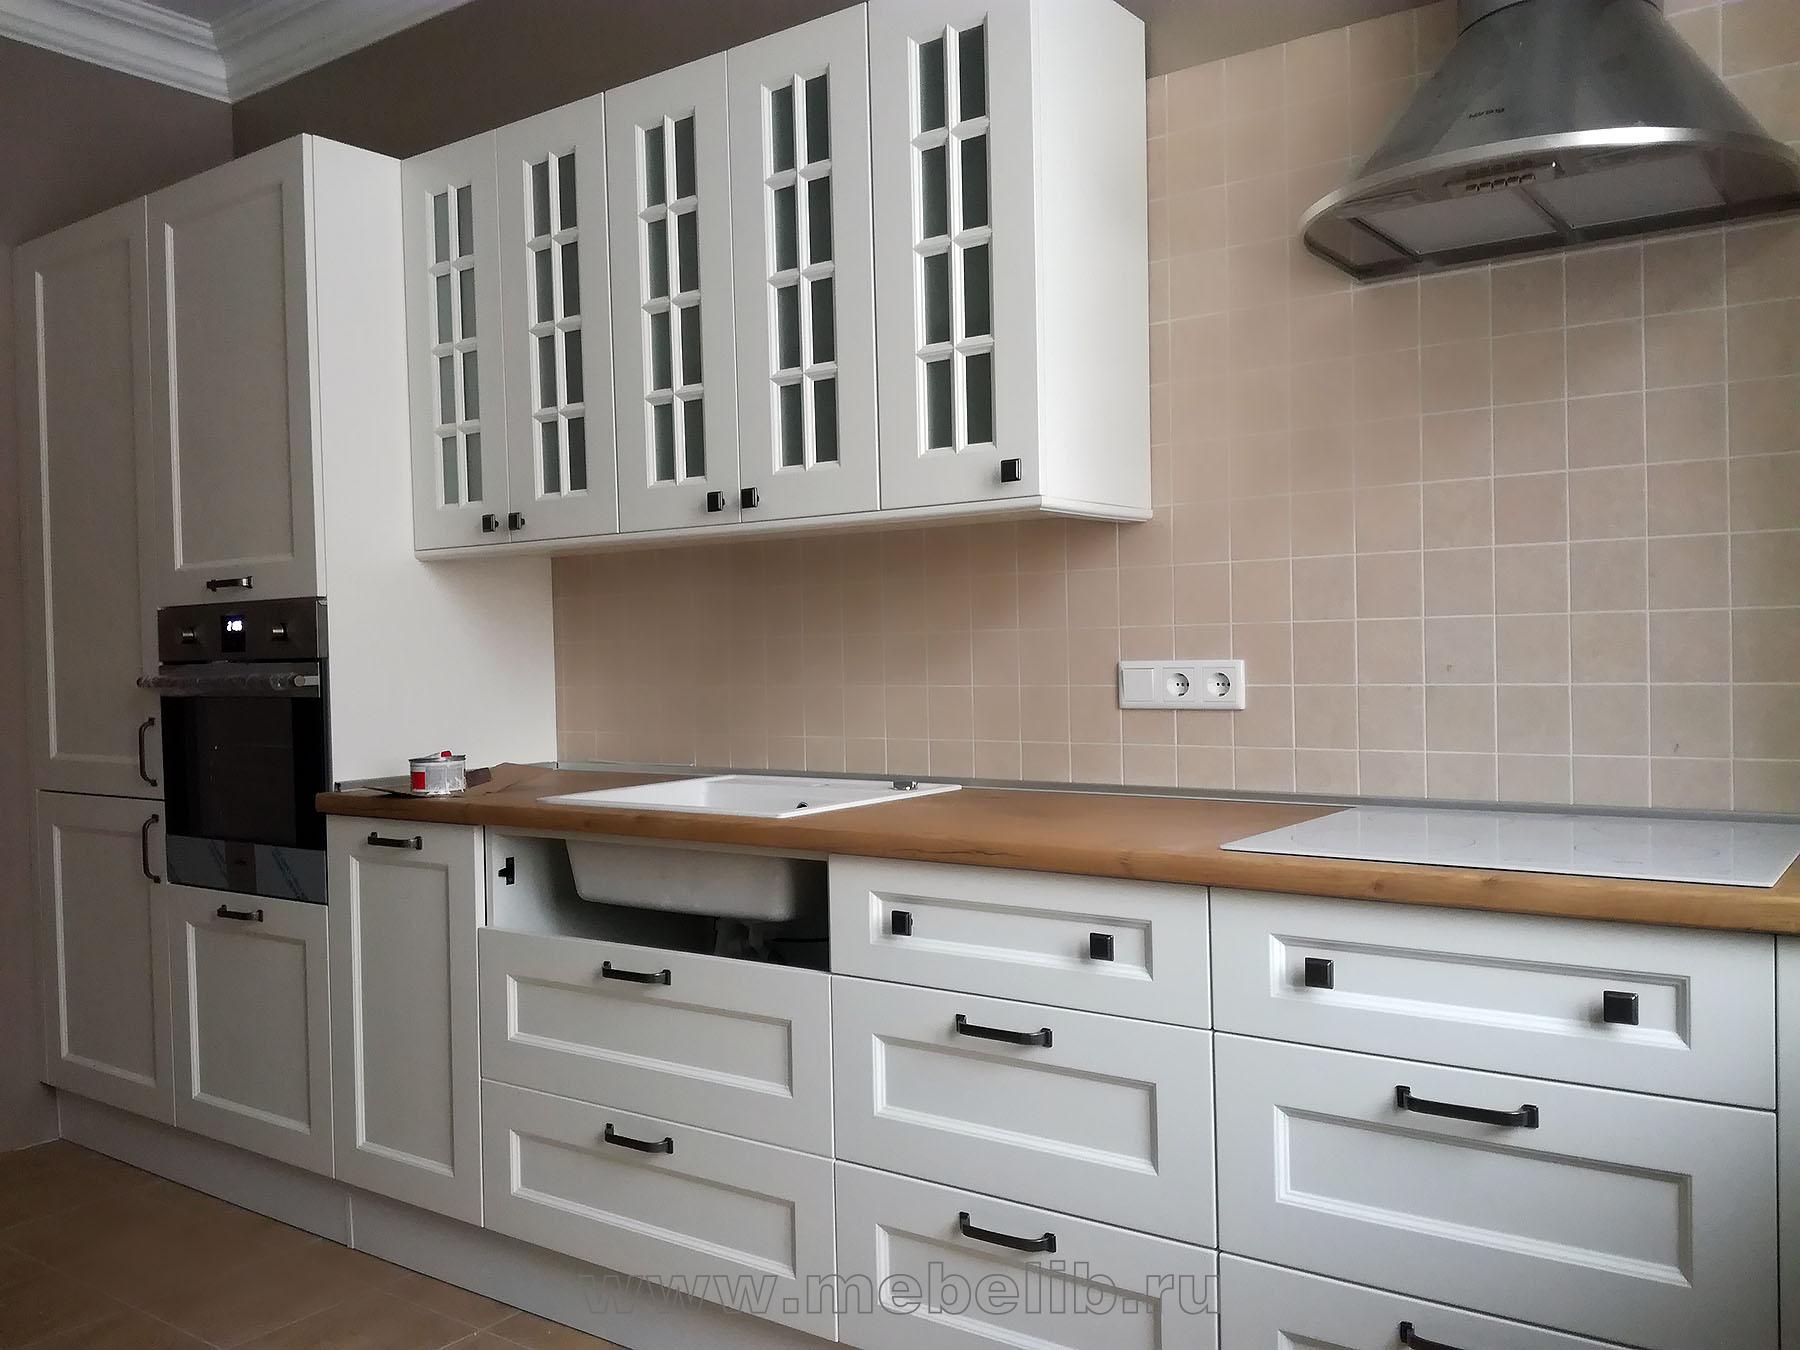 Кухонная мебель – МДФ, белая эмаль